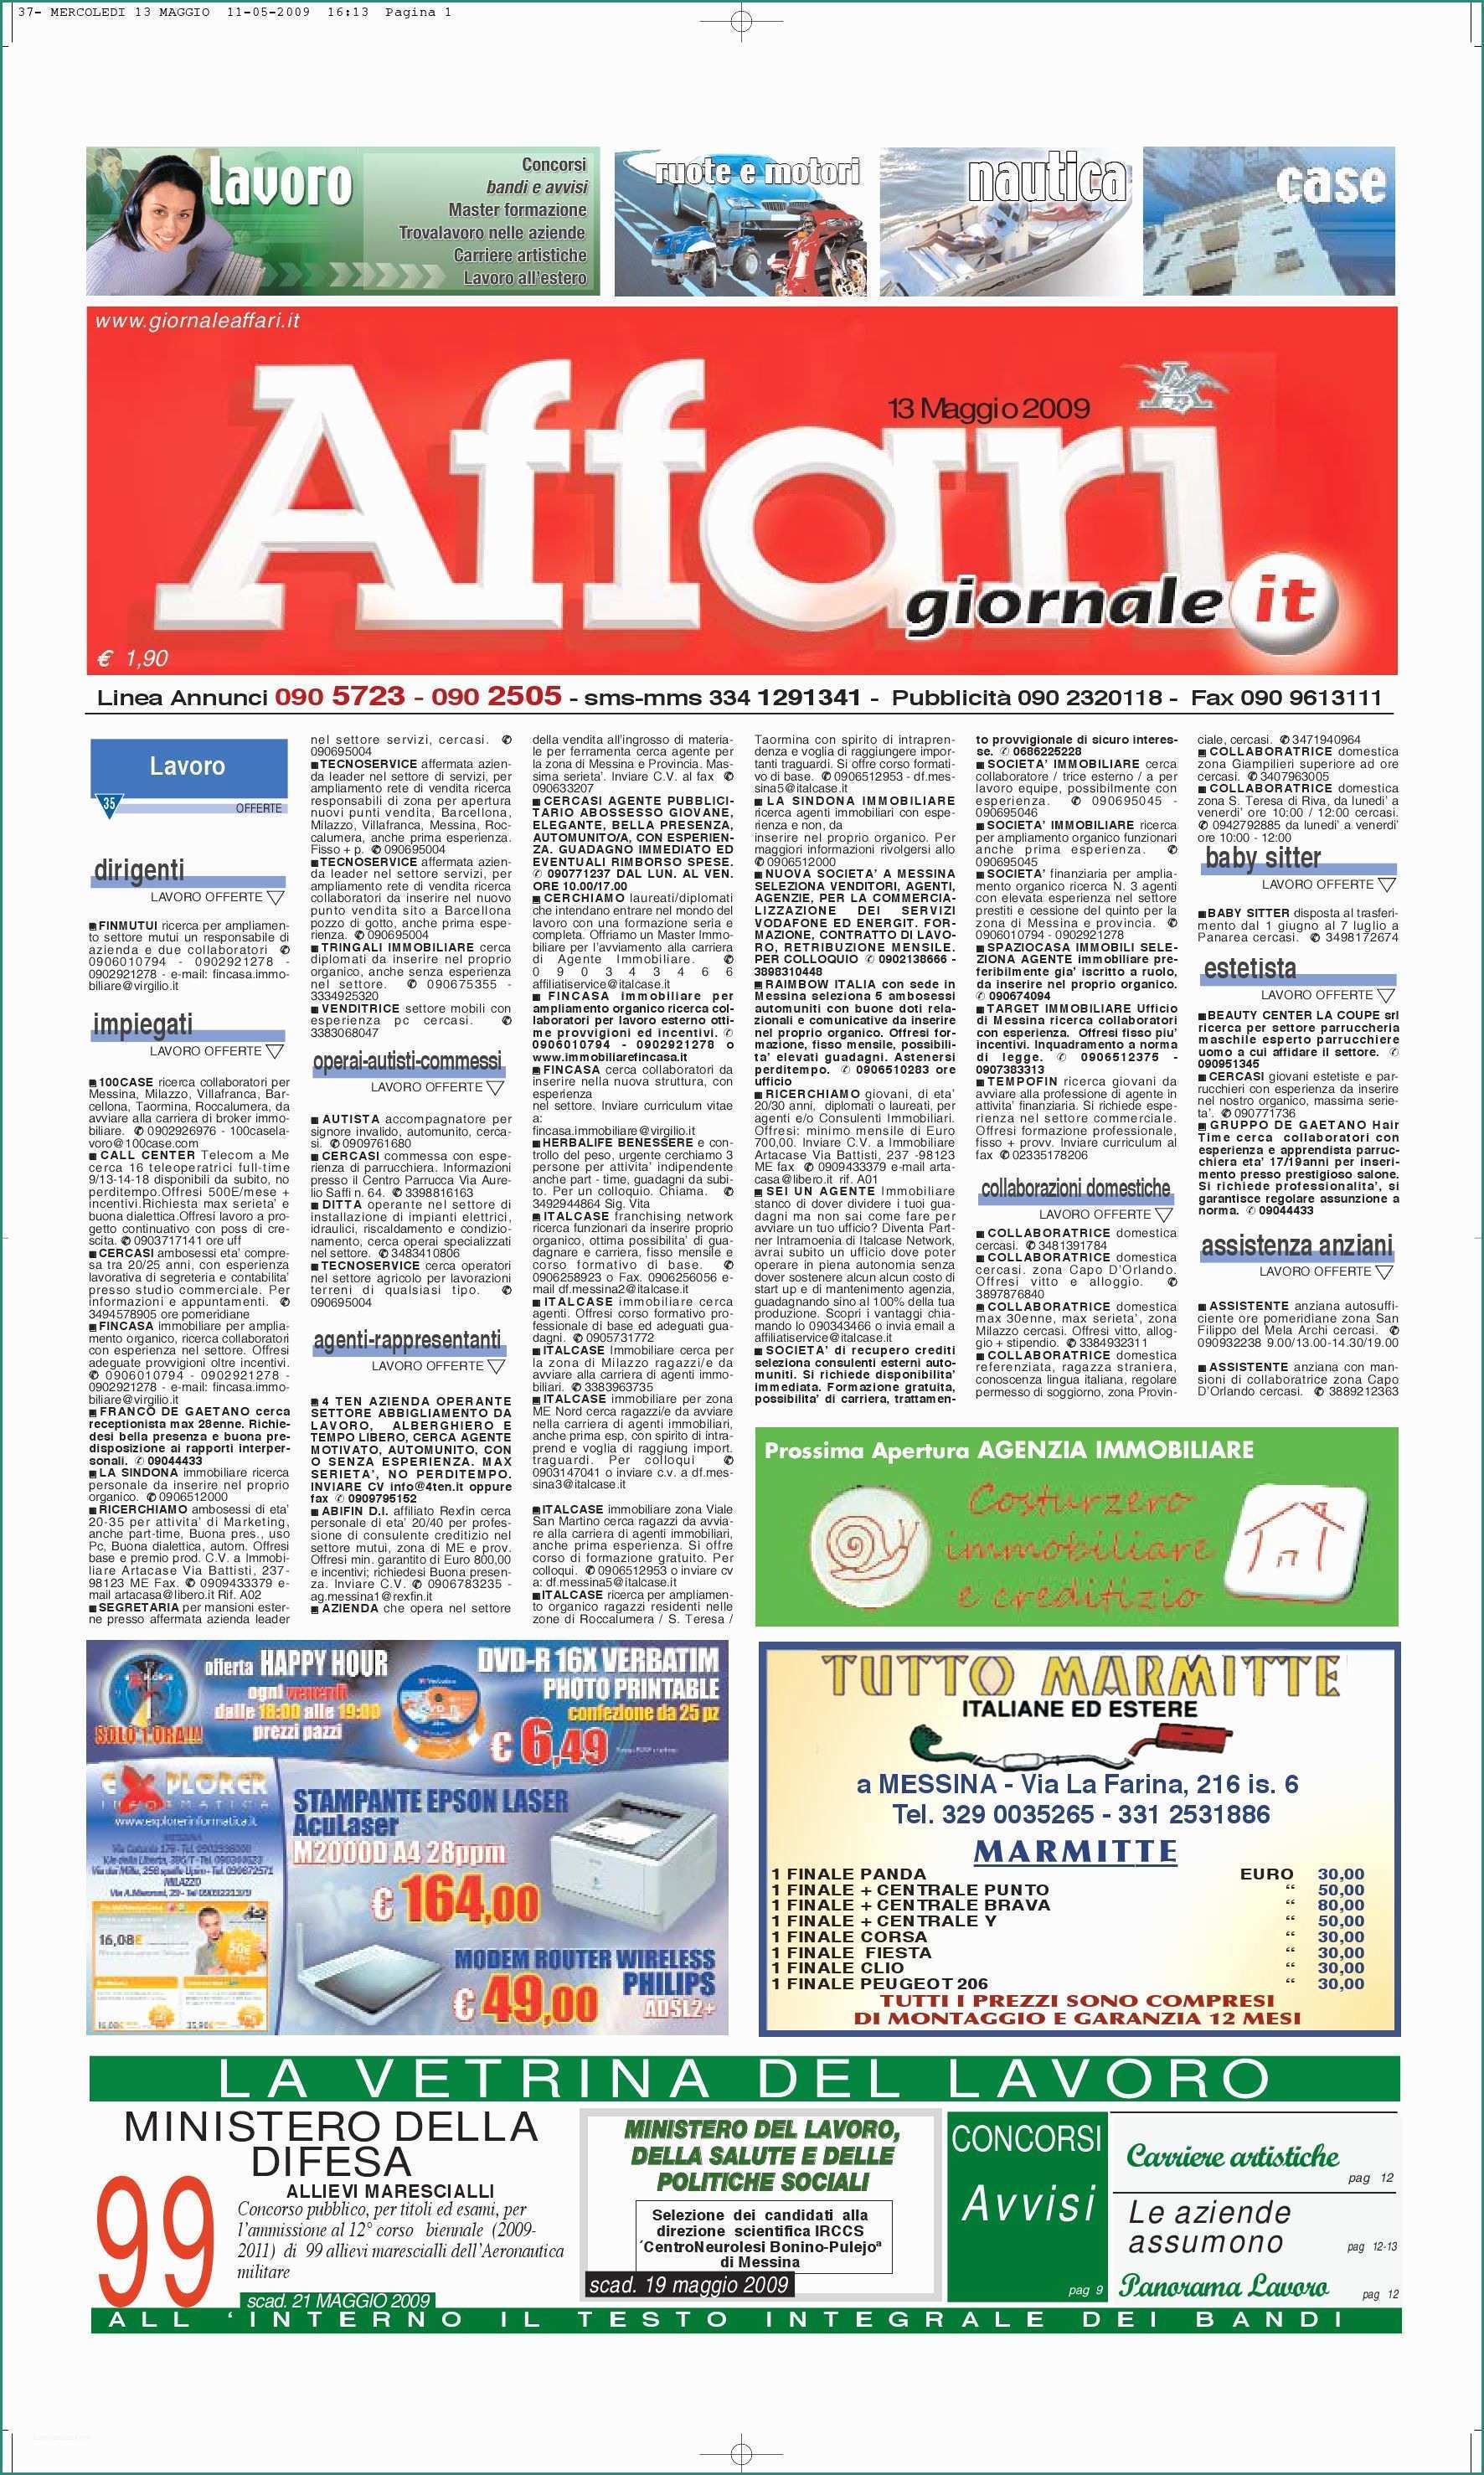 Montacarichi Ristorante Dwg E Giornale Affari Mercoledi 13 Maggio 2009 by Editoriale Affari Srl